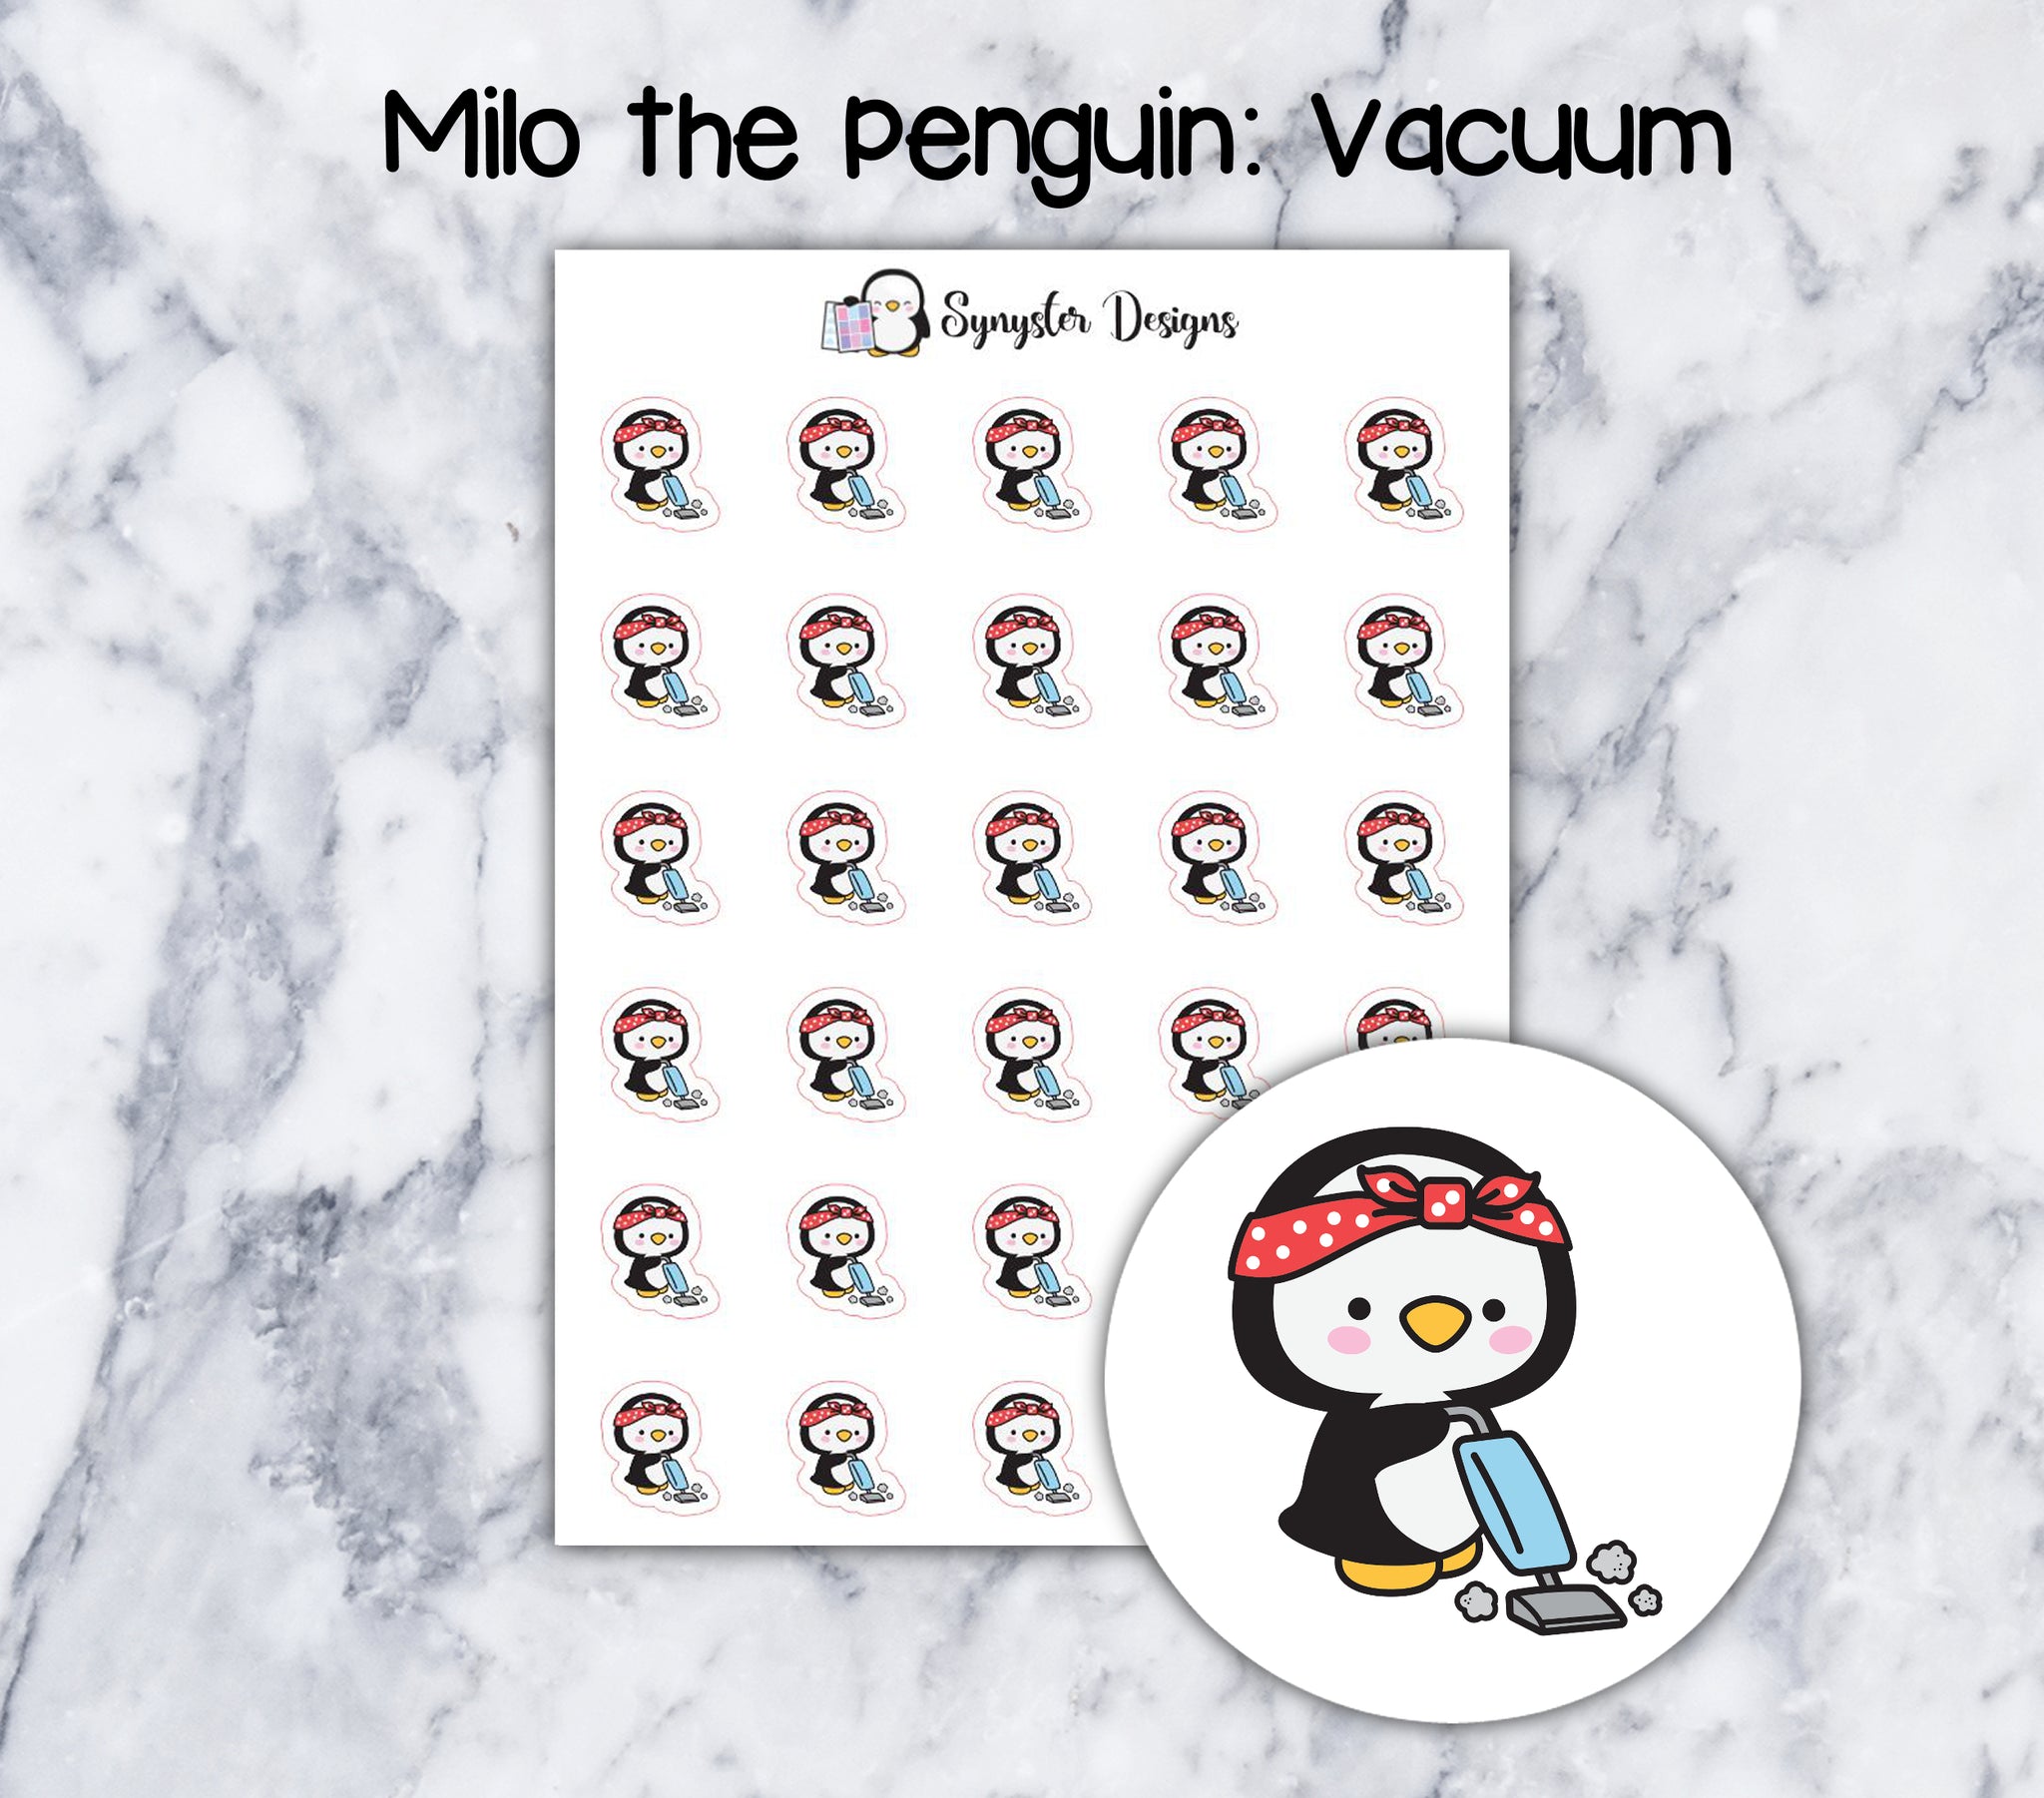 Vacuum Milo the Penguin